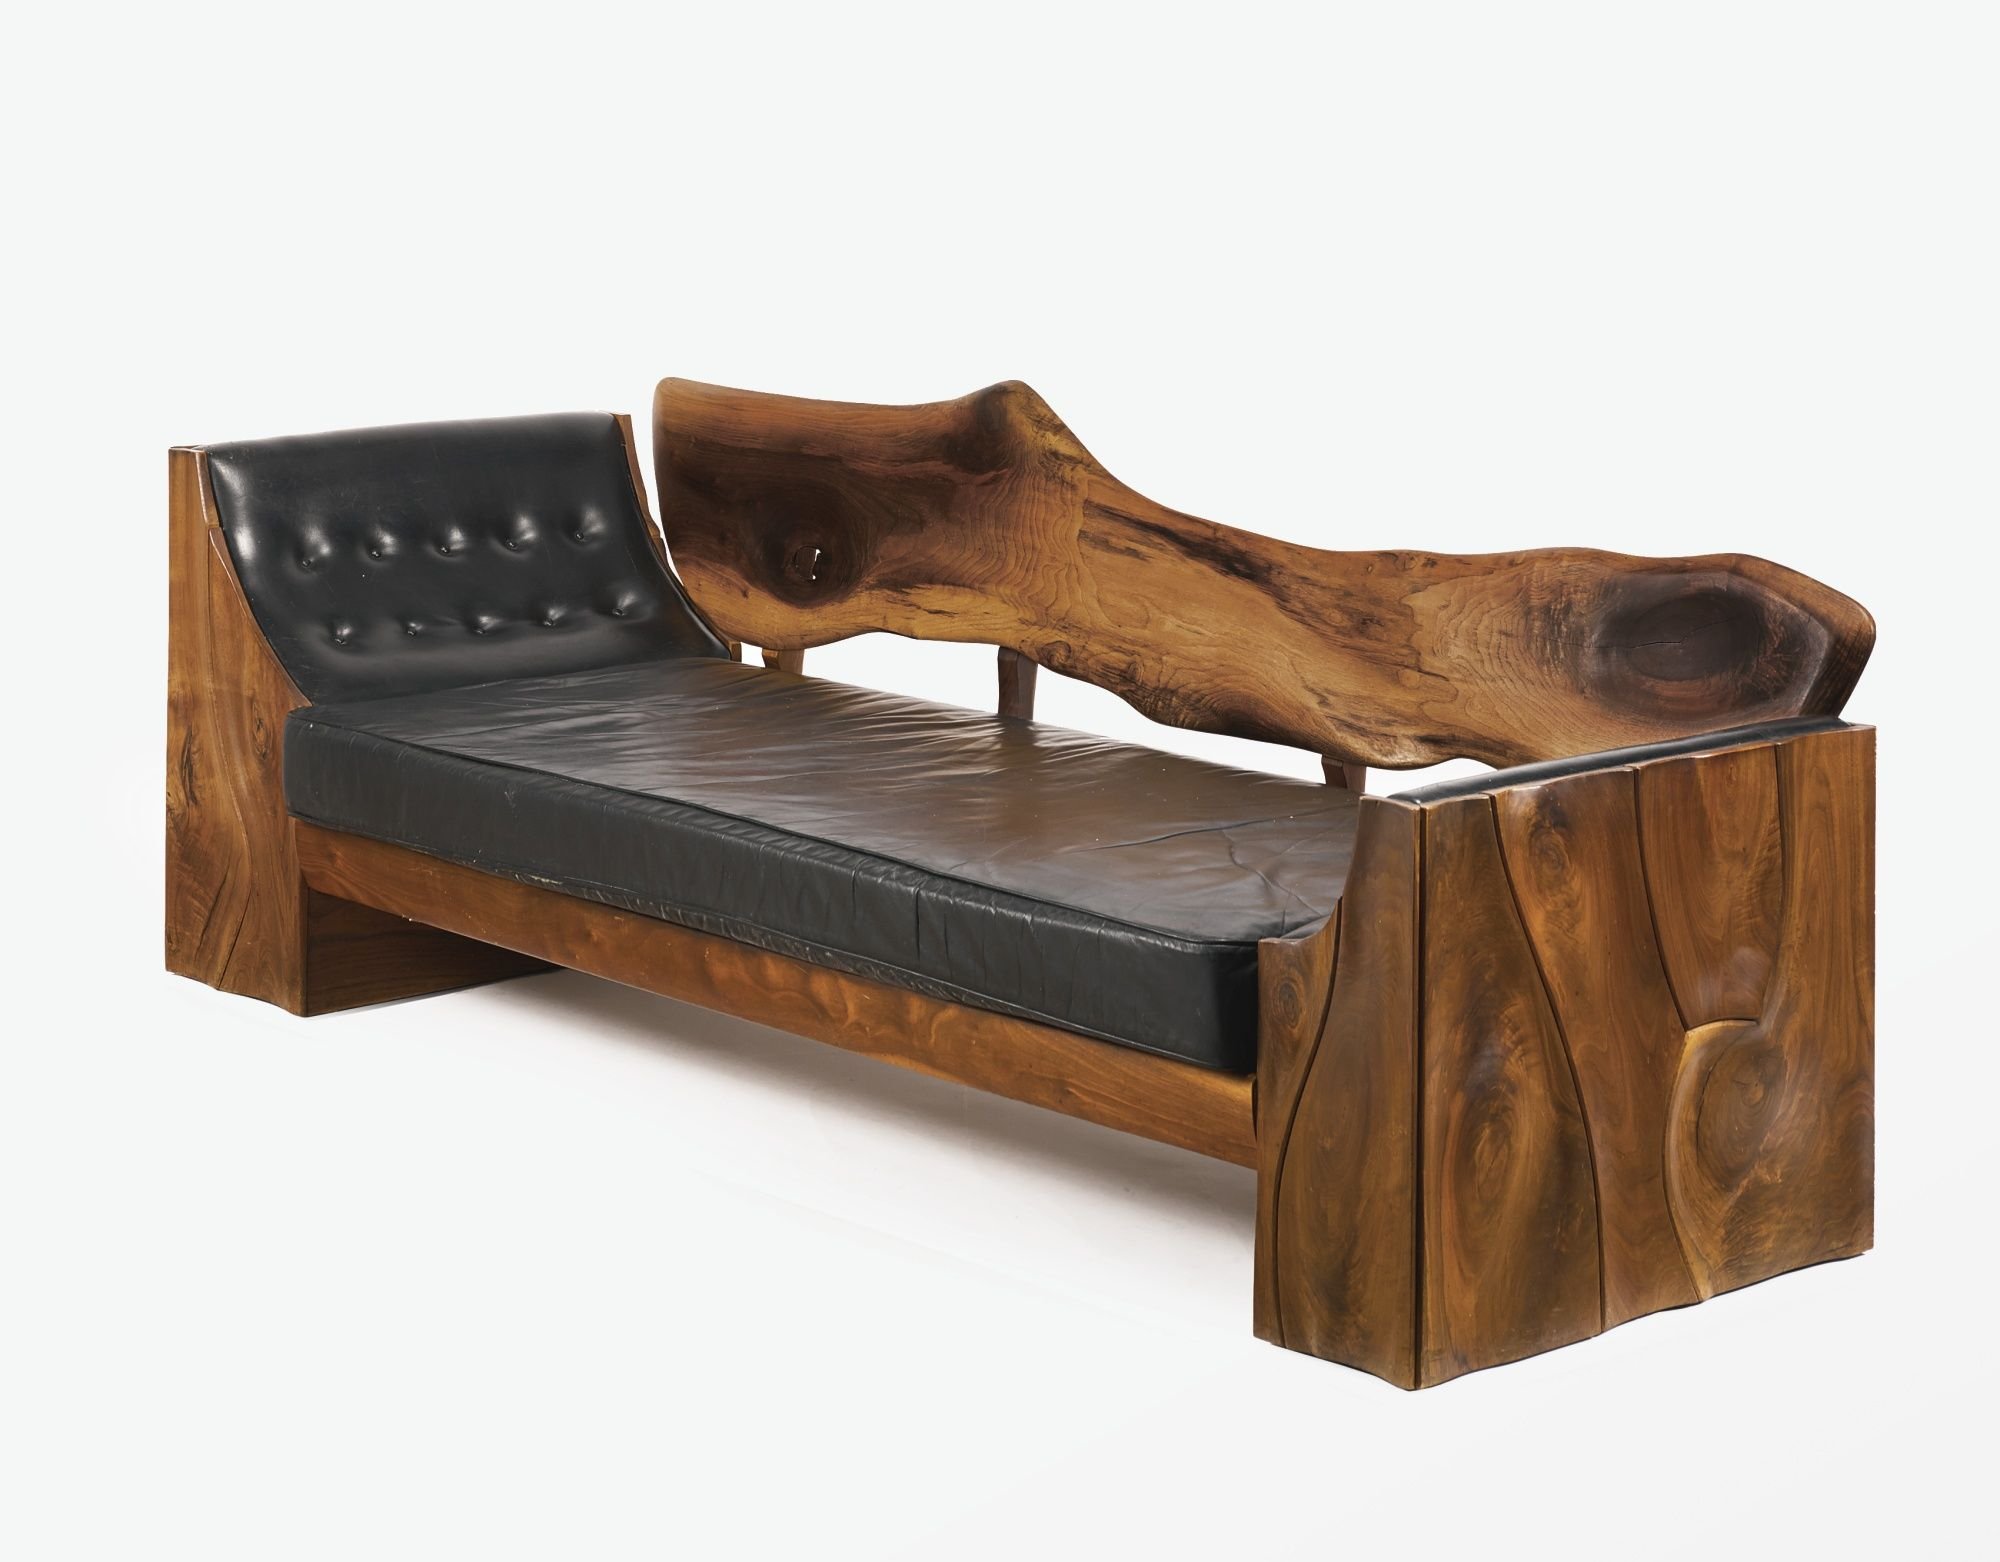 мебель для сидения преимущественно с деревянным каркасом